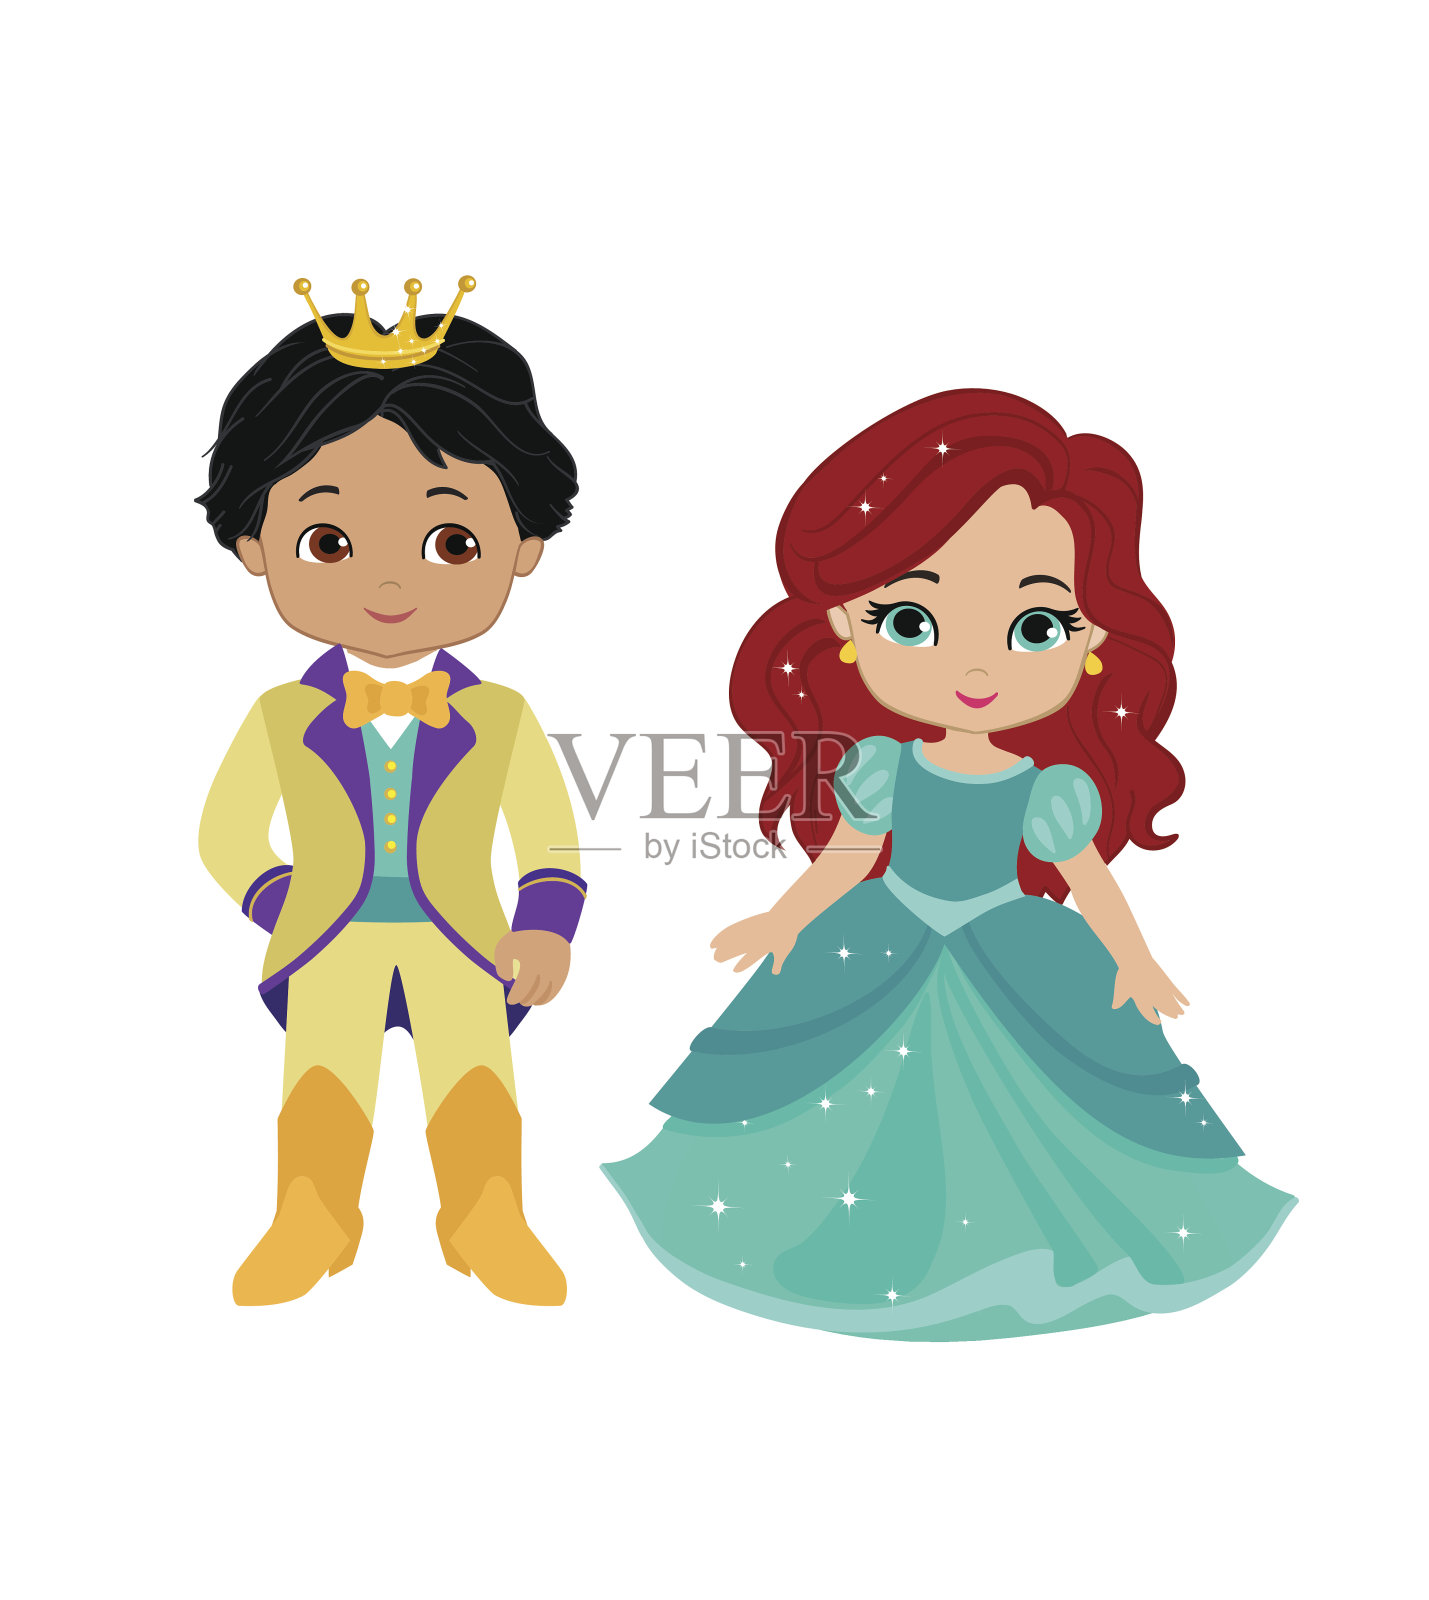 非常可爱的王子和公主的插图插画图片素材